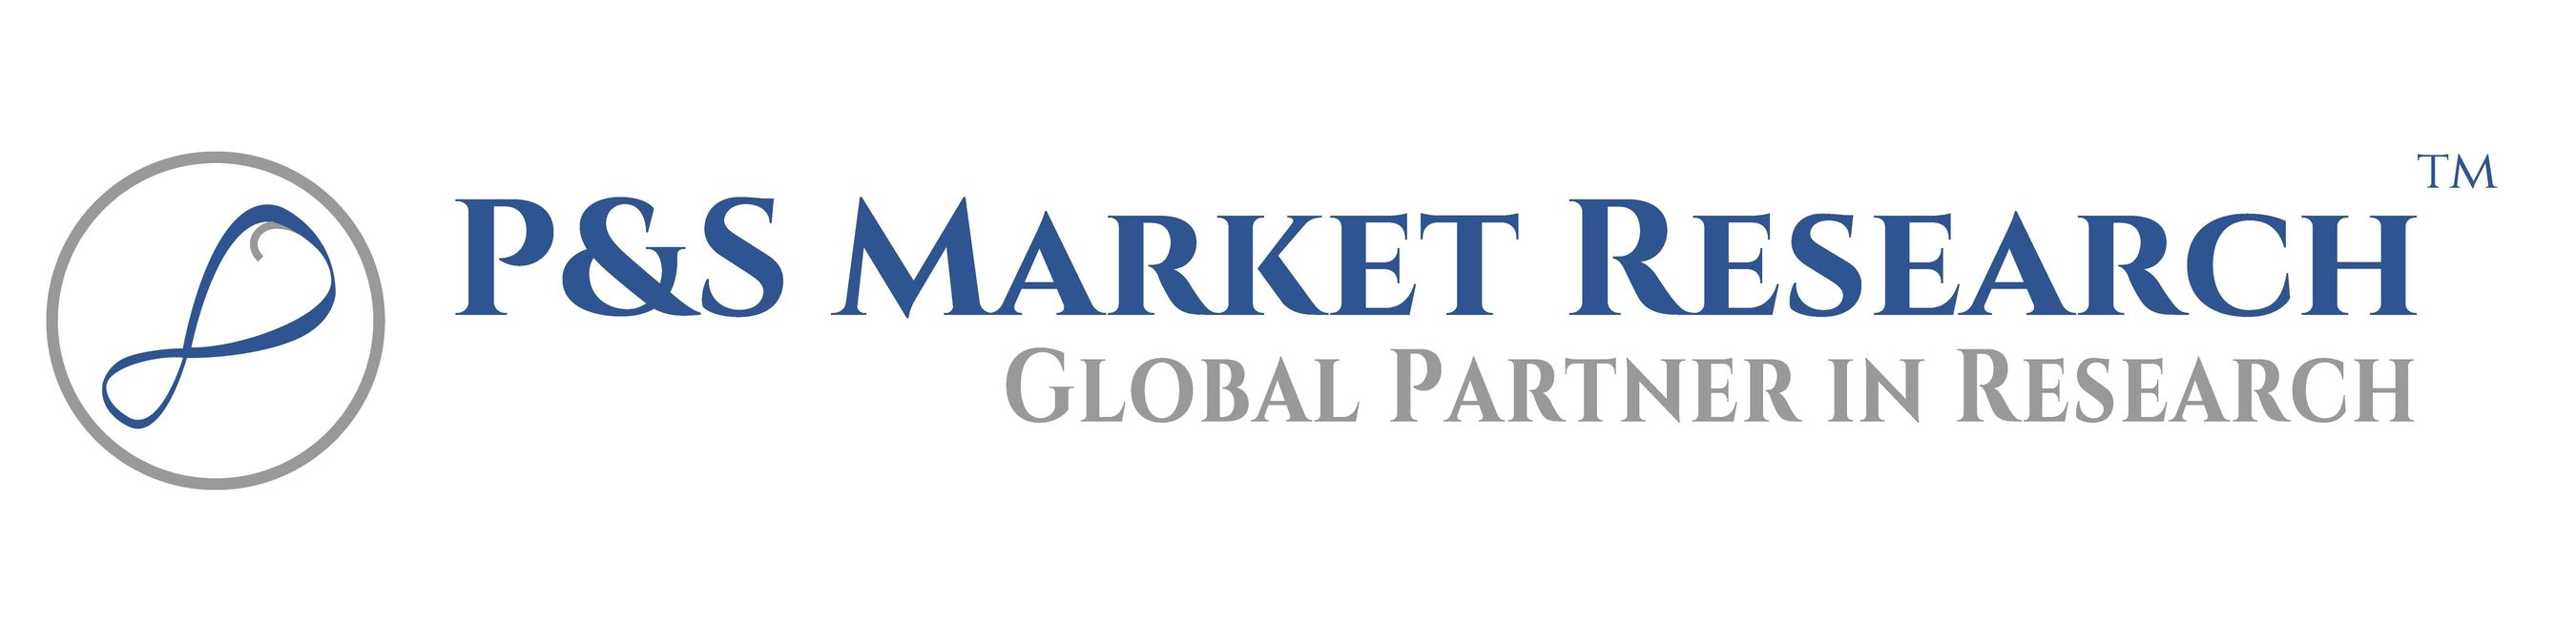 P&S Market Research Logo (PRNewsFoto/P&S Market Research)